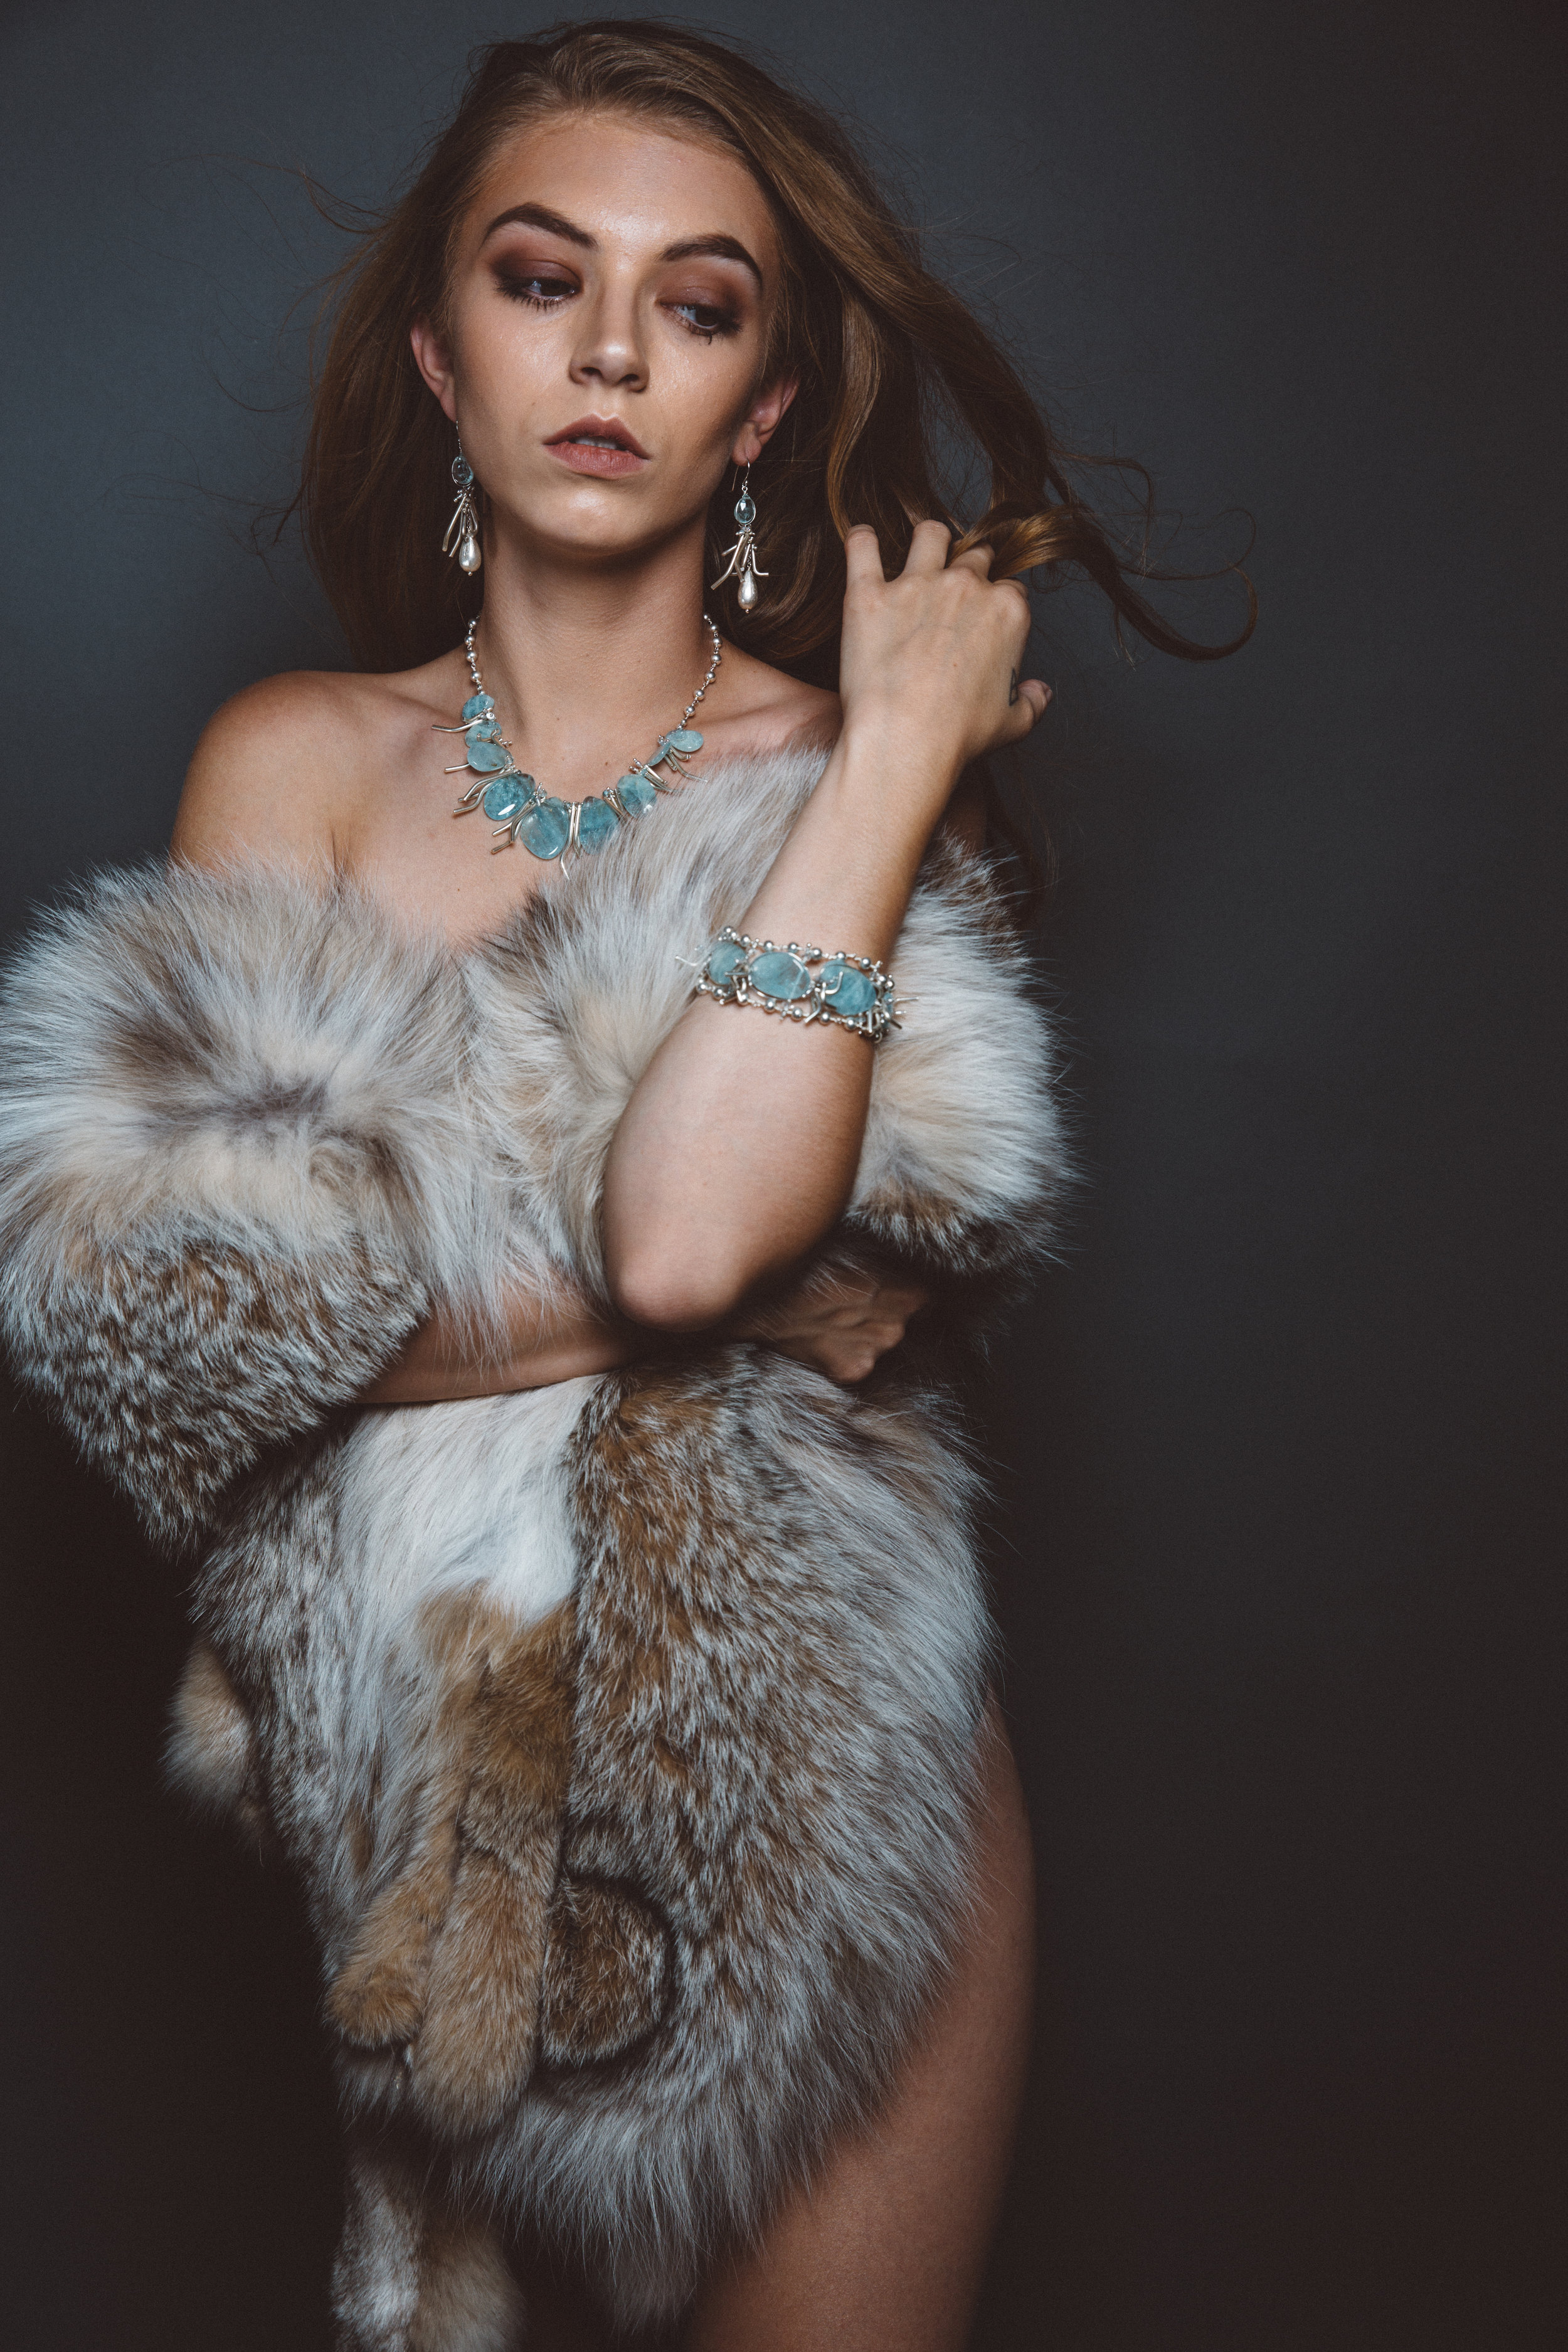 model wearing aquamarine bracelet